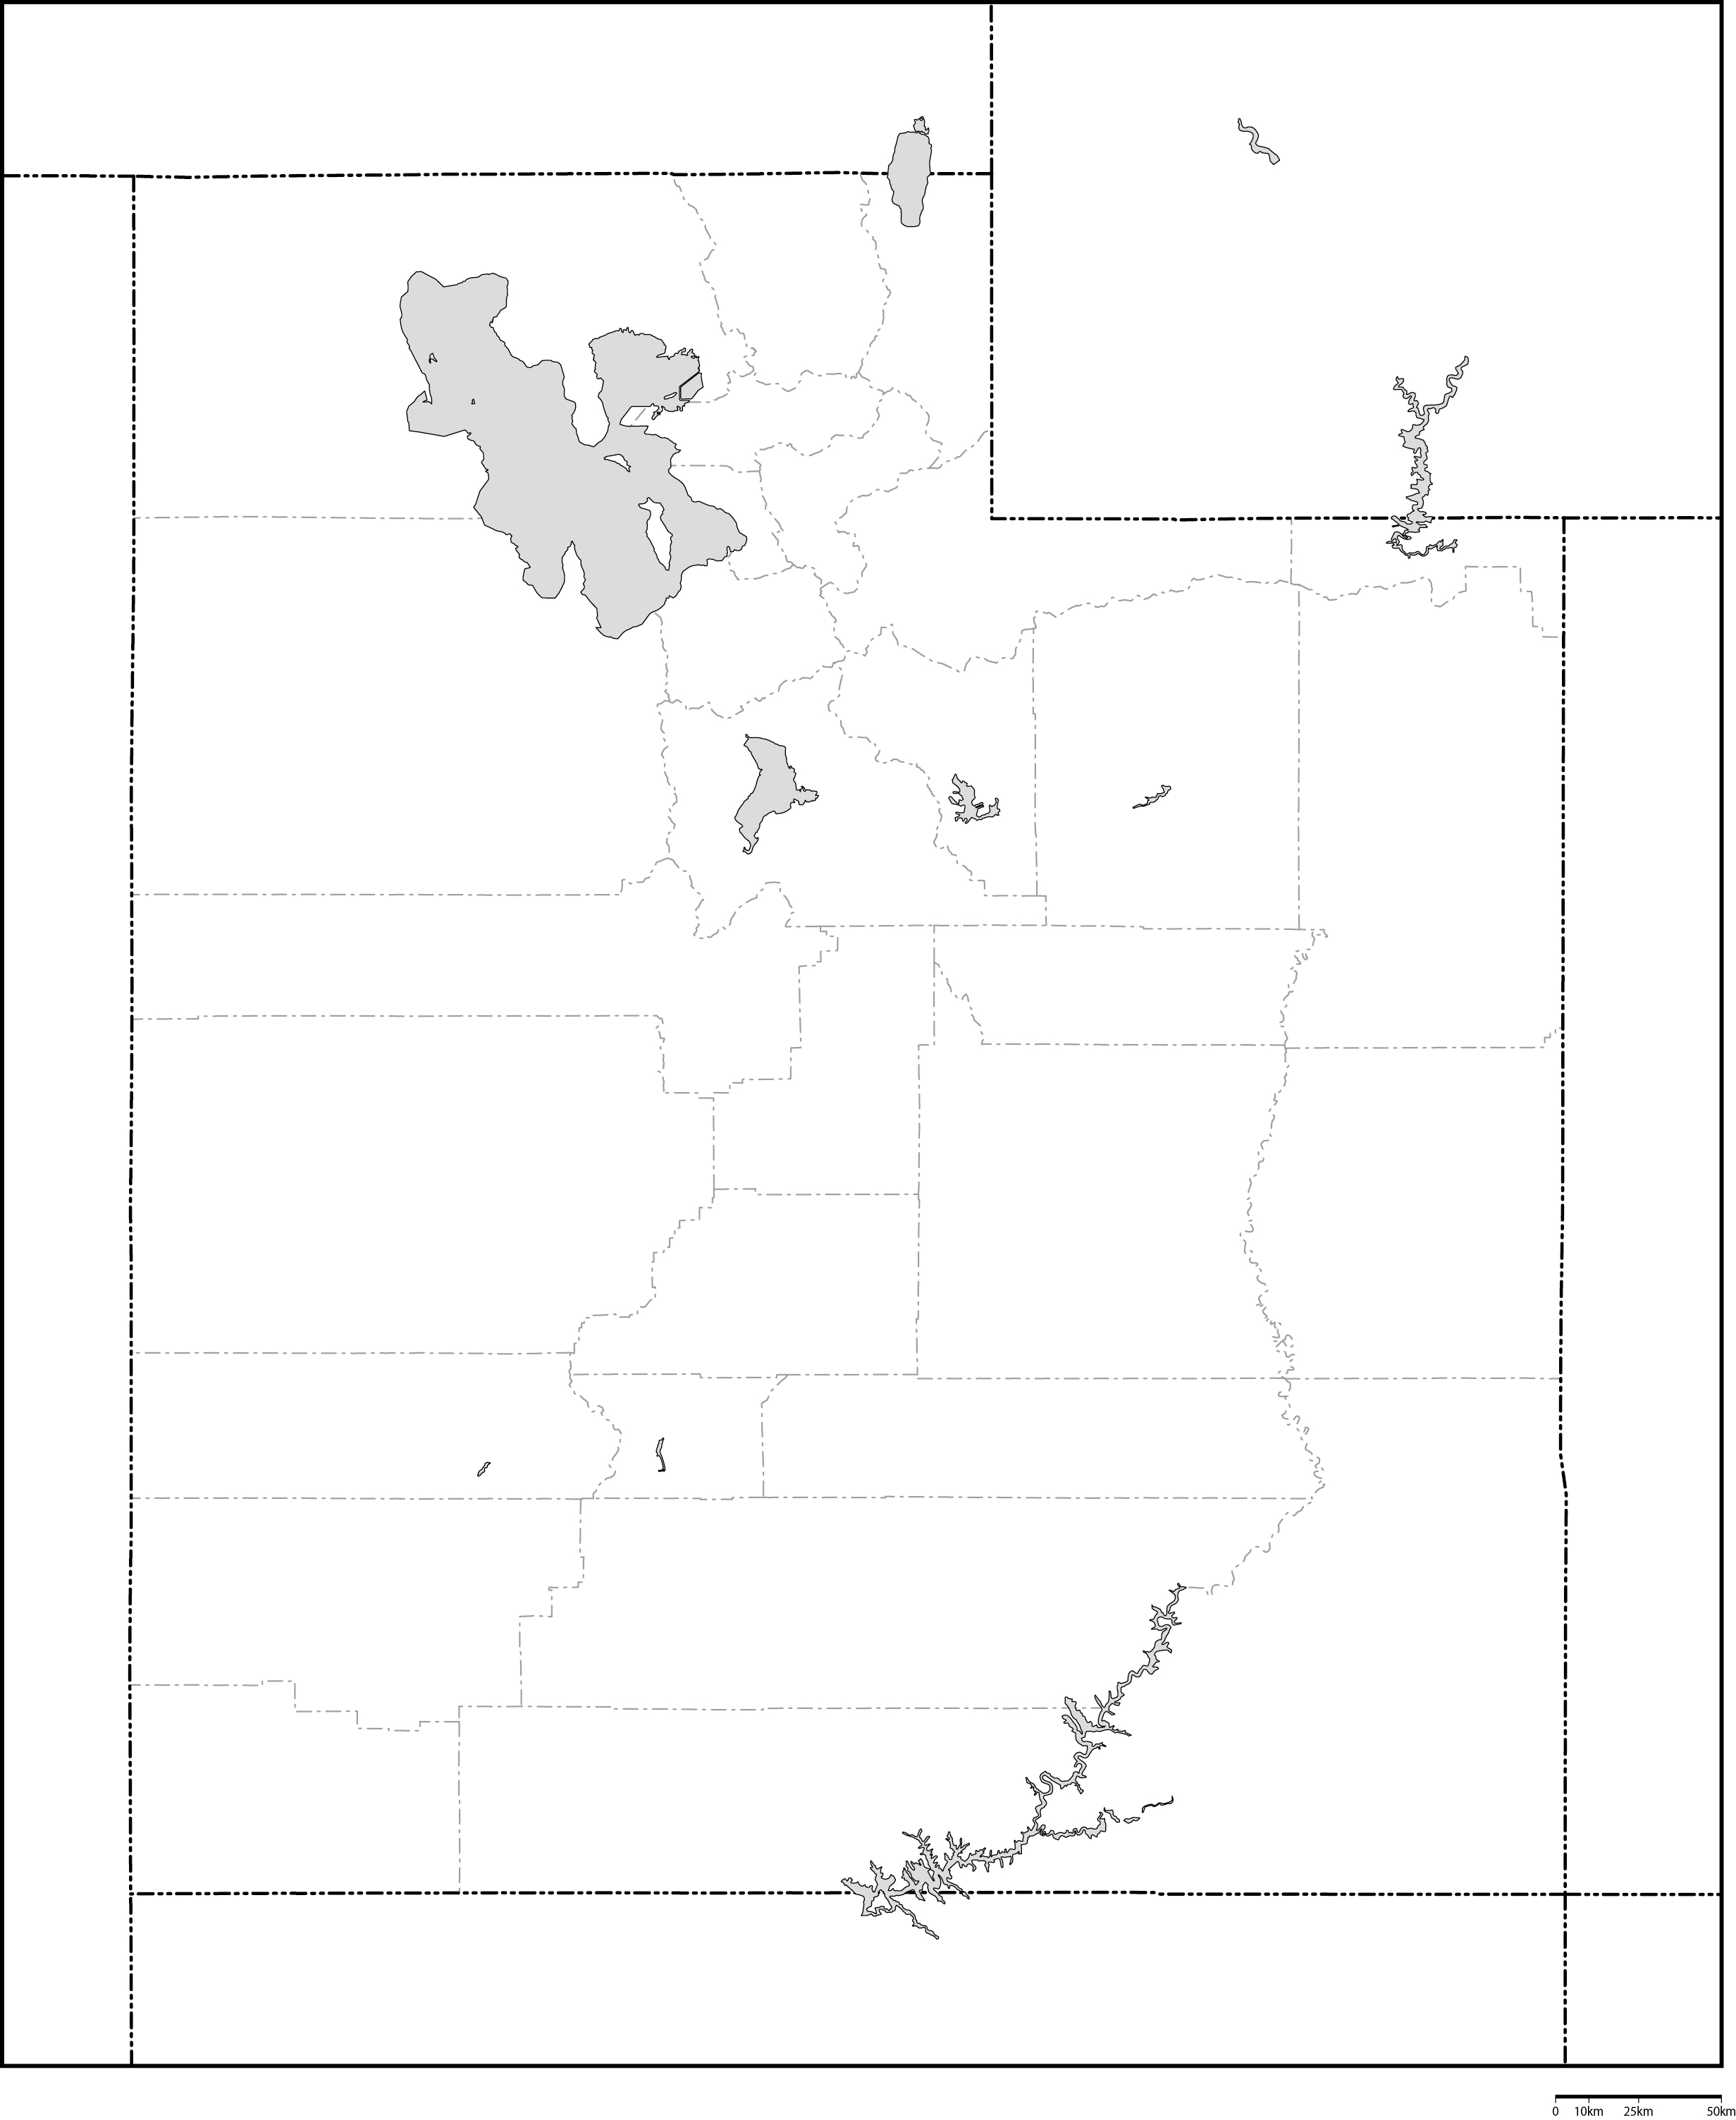 ユタ州郡分け白地図フリーデータの画像